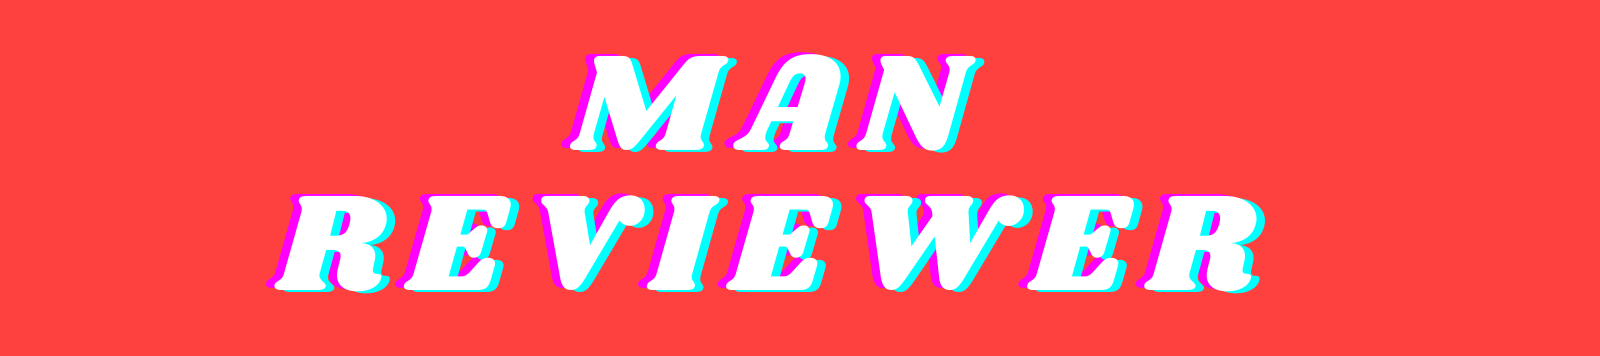 Man Reviewer